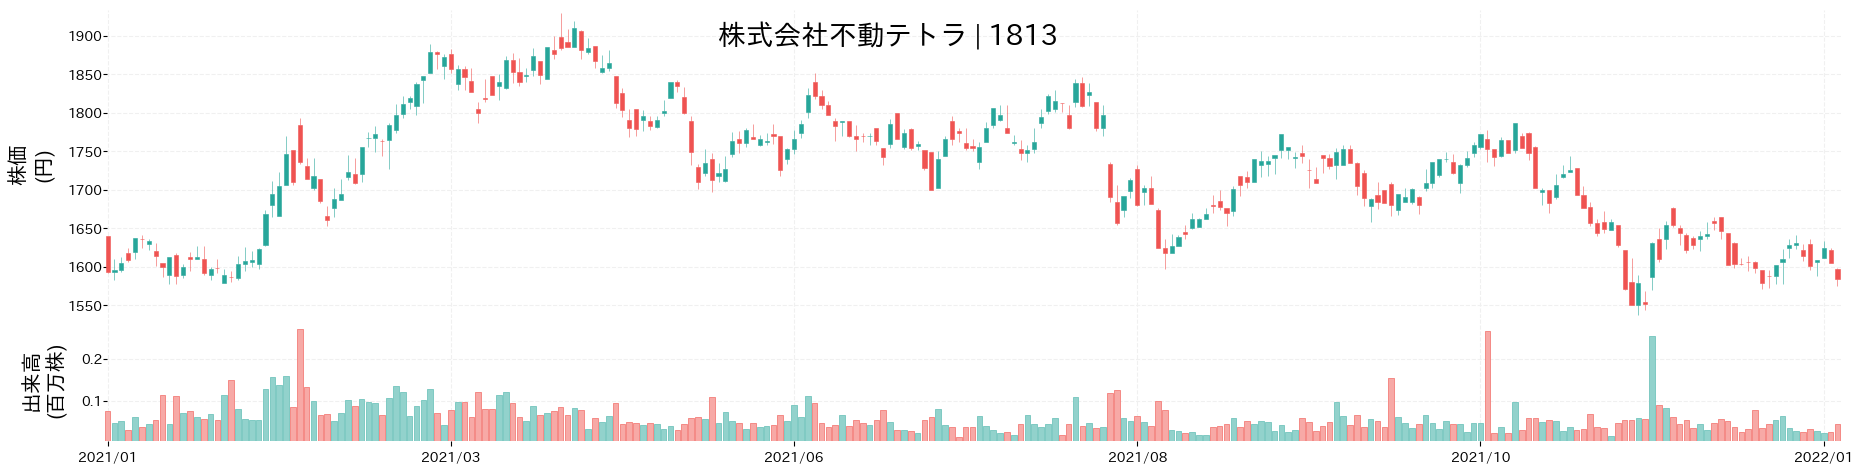 不動テトラの株価推移(2021)